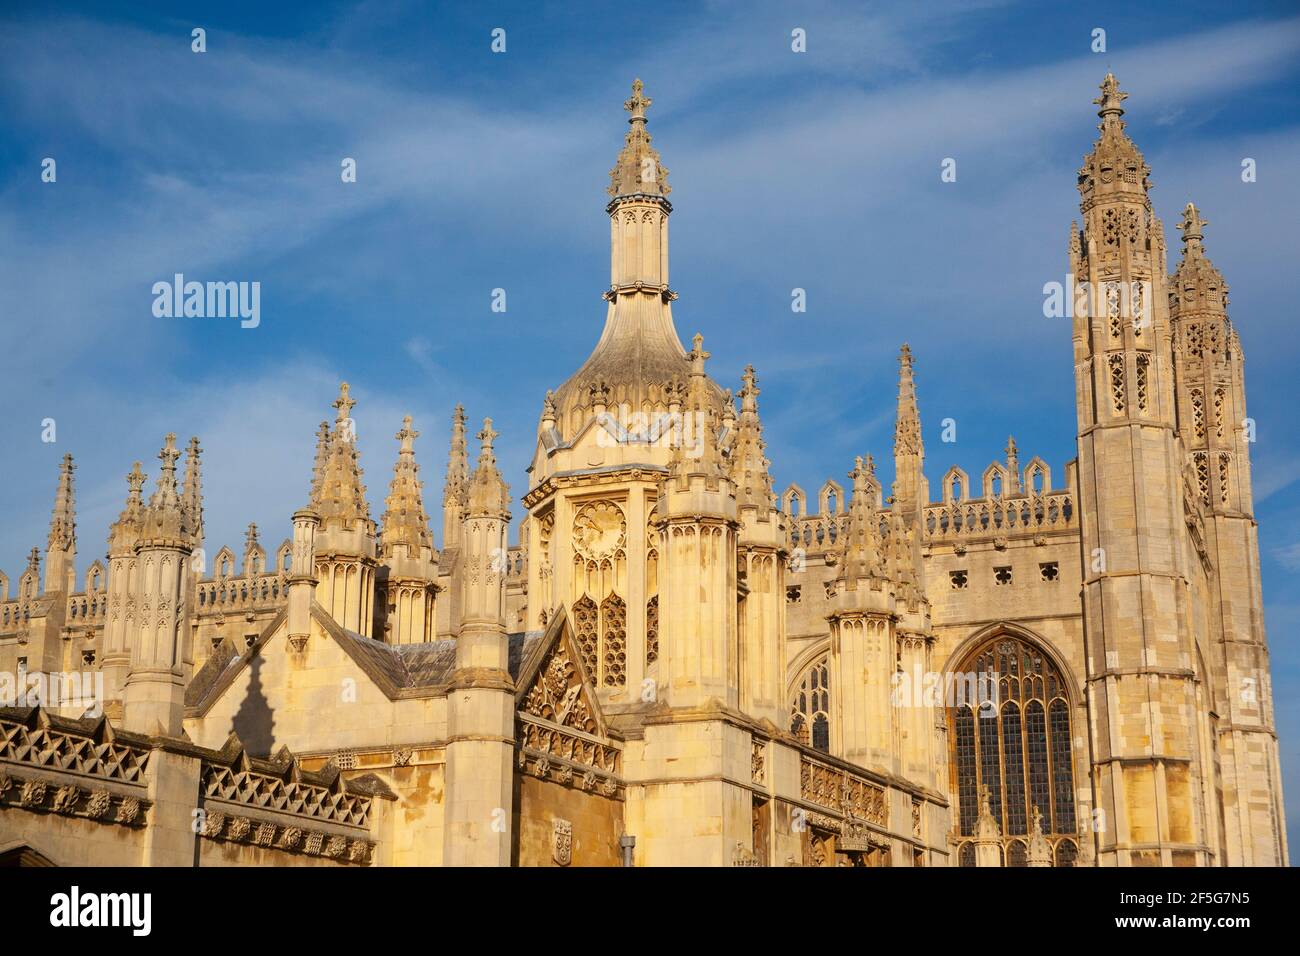 Kings College, Cambridge. Stock Photo